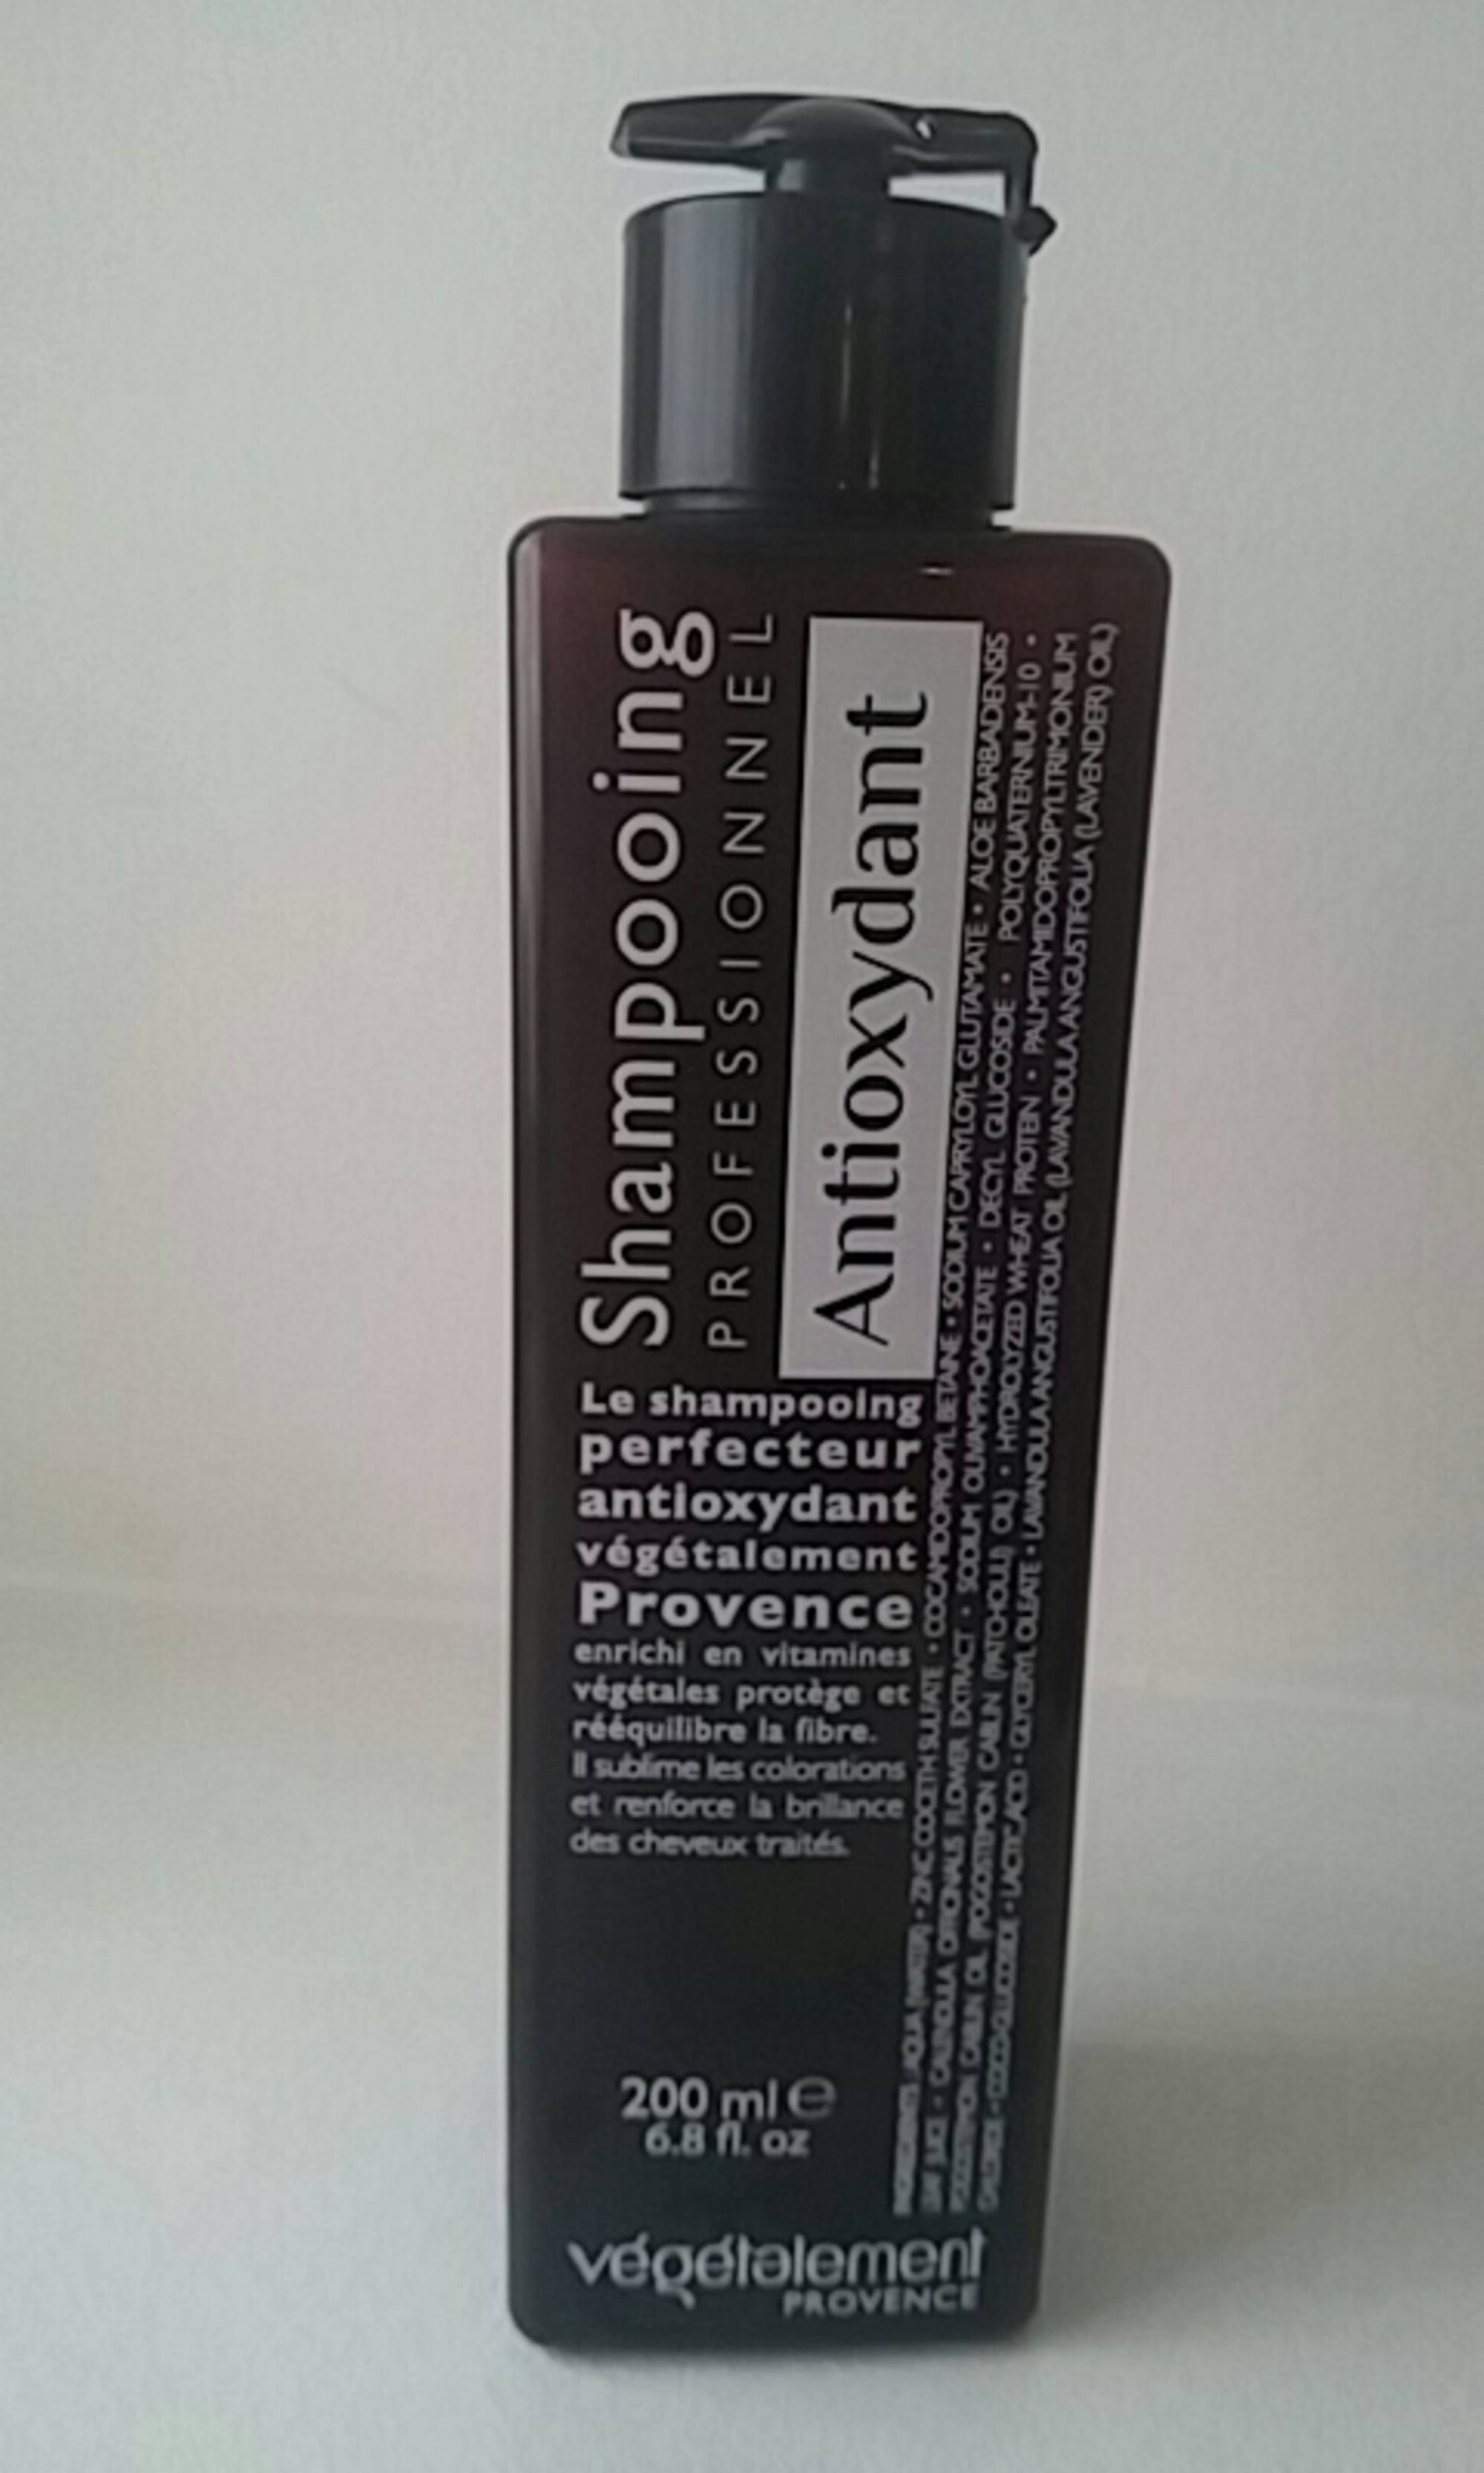 VEGETALEMENT PROVENCE - Le shampooing perfecteur antioxydant 